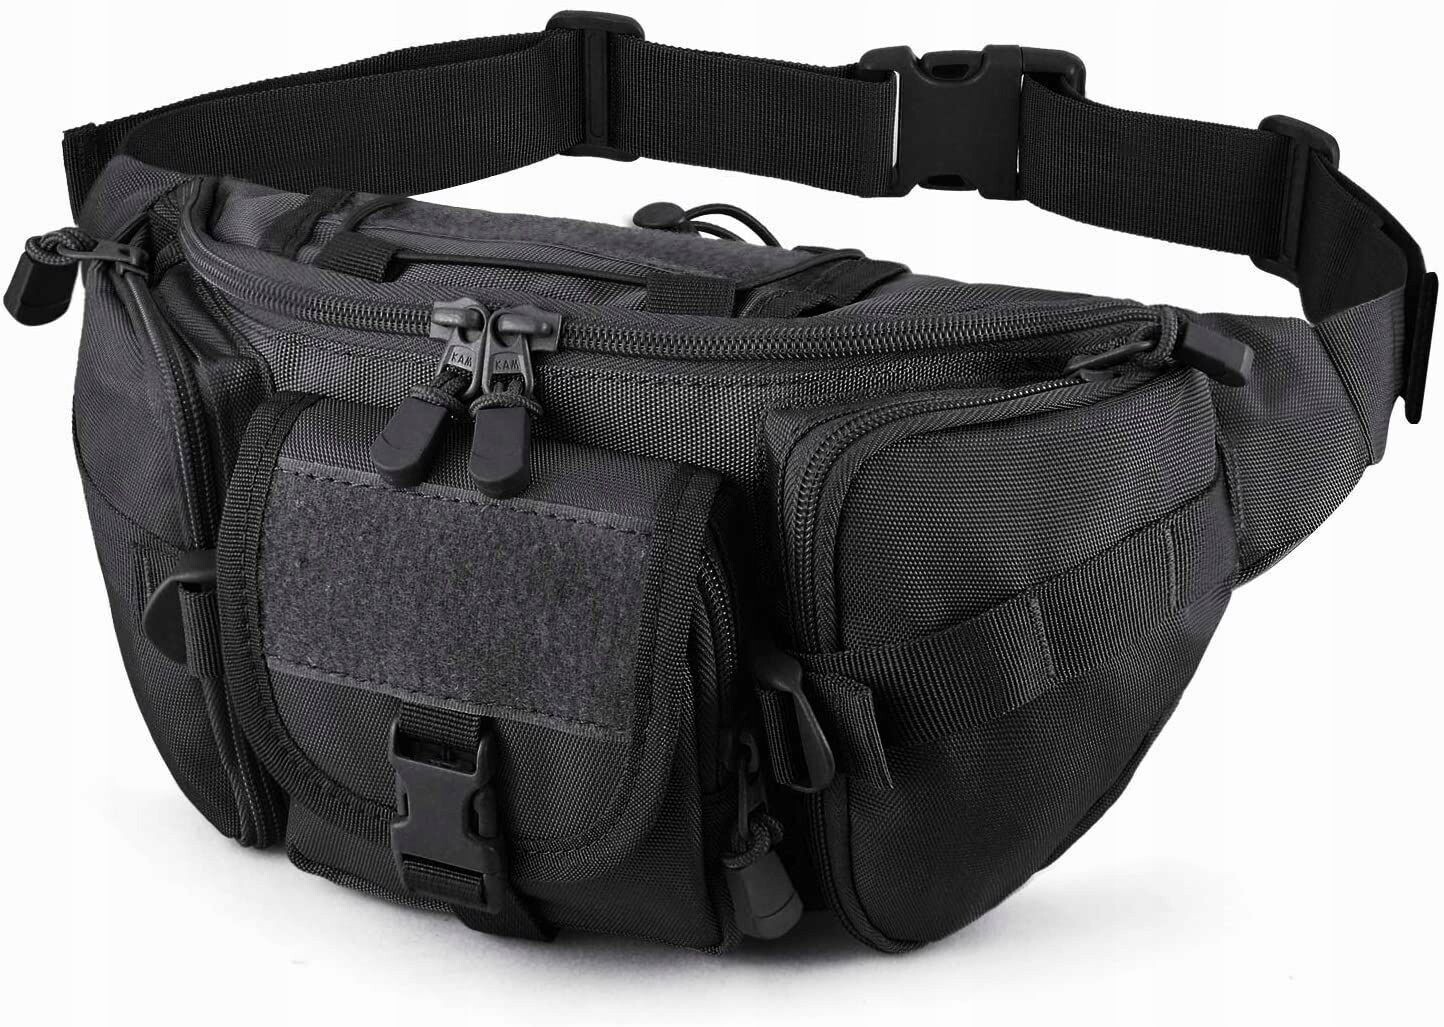 Bauchtasche Outdoor Gürteltasche Hüfttasche Survival Militär Taktische Ausrüstung, Farbe: Schwarz